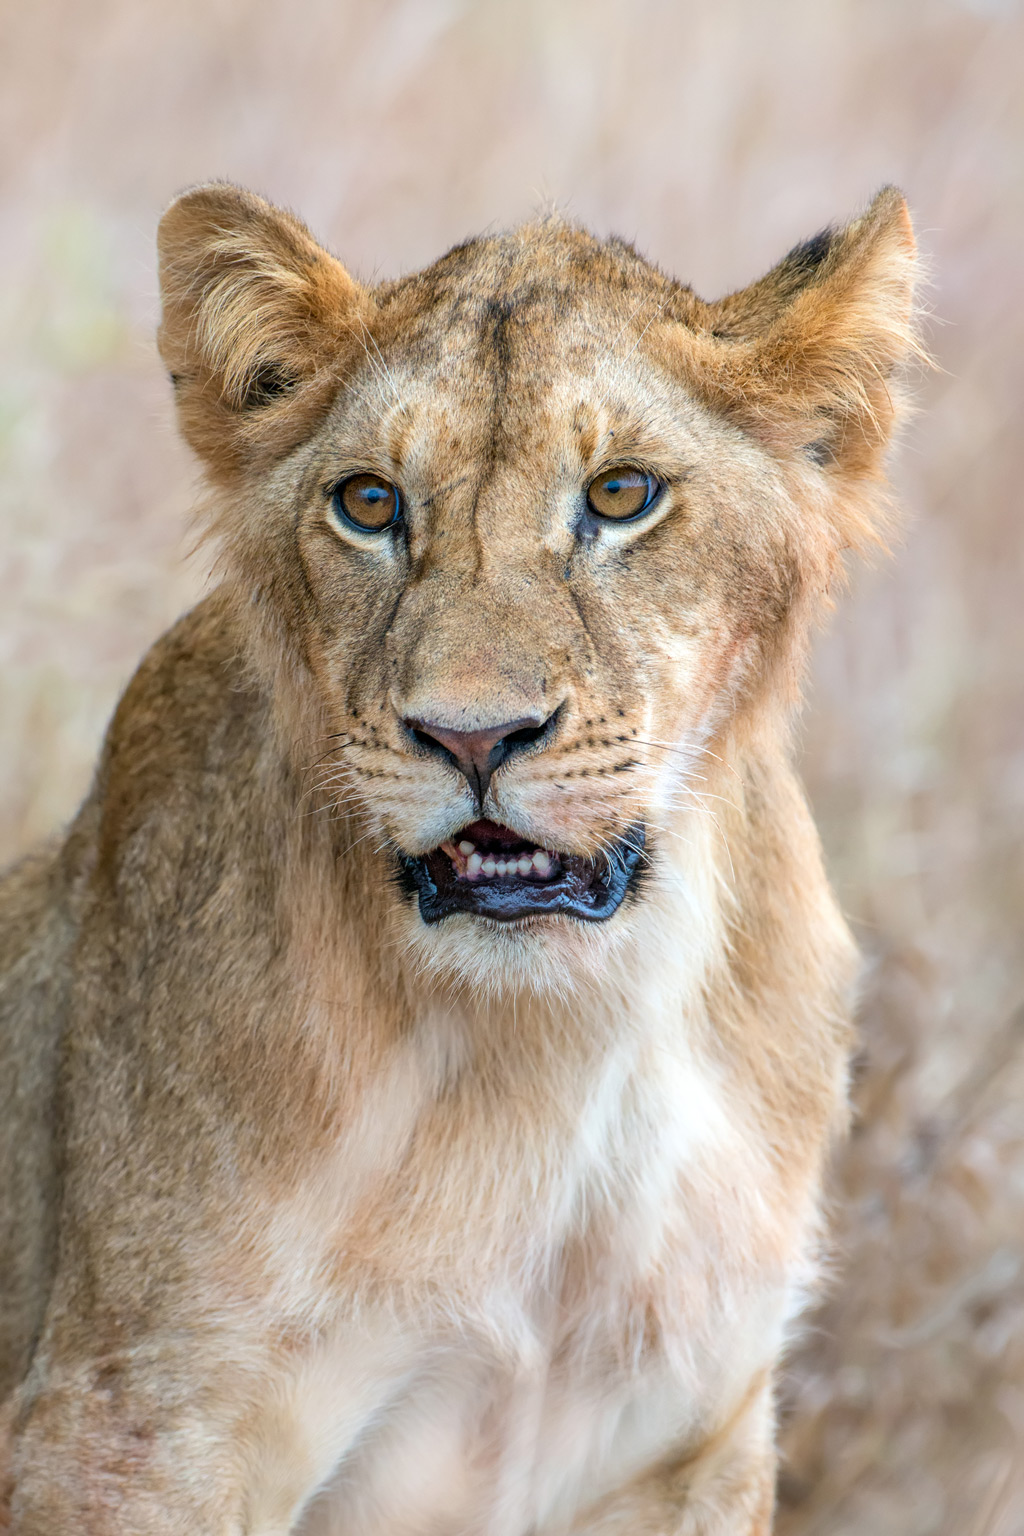 A lions portrait